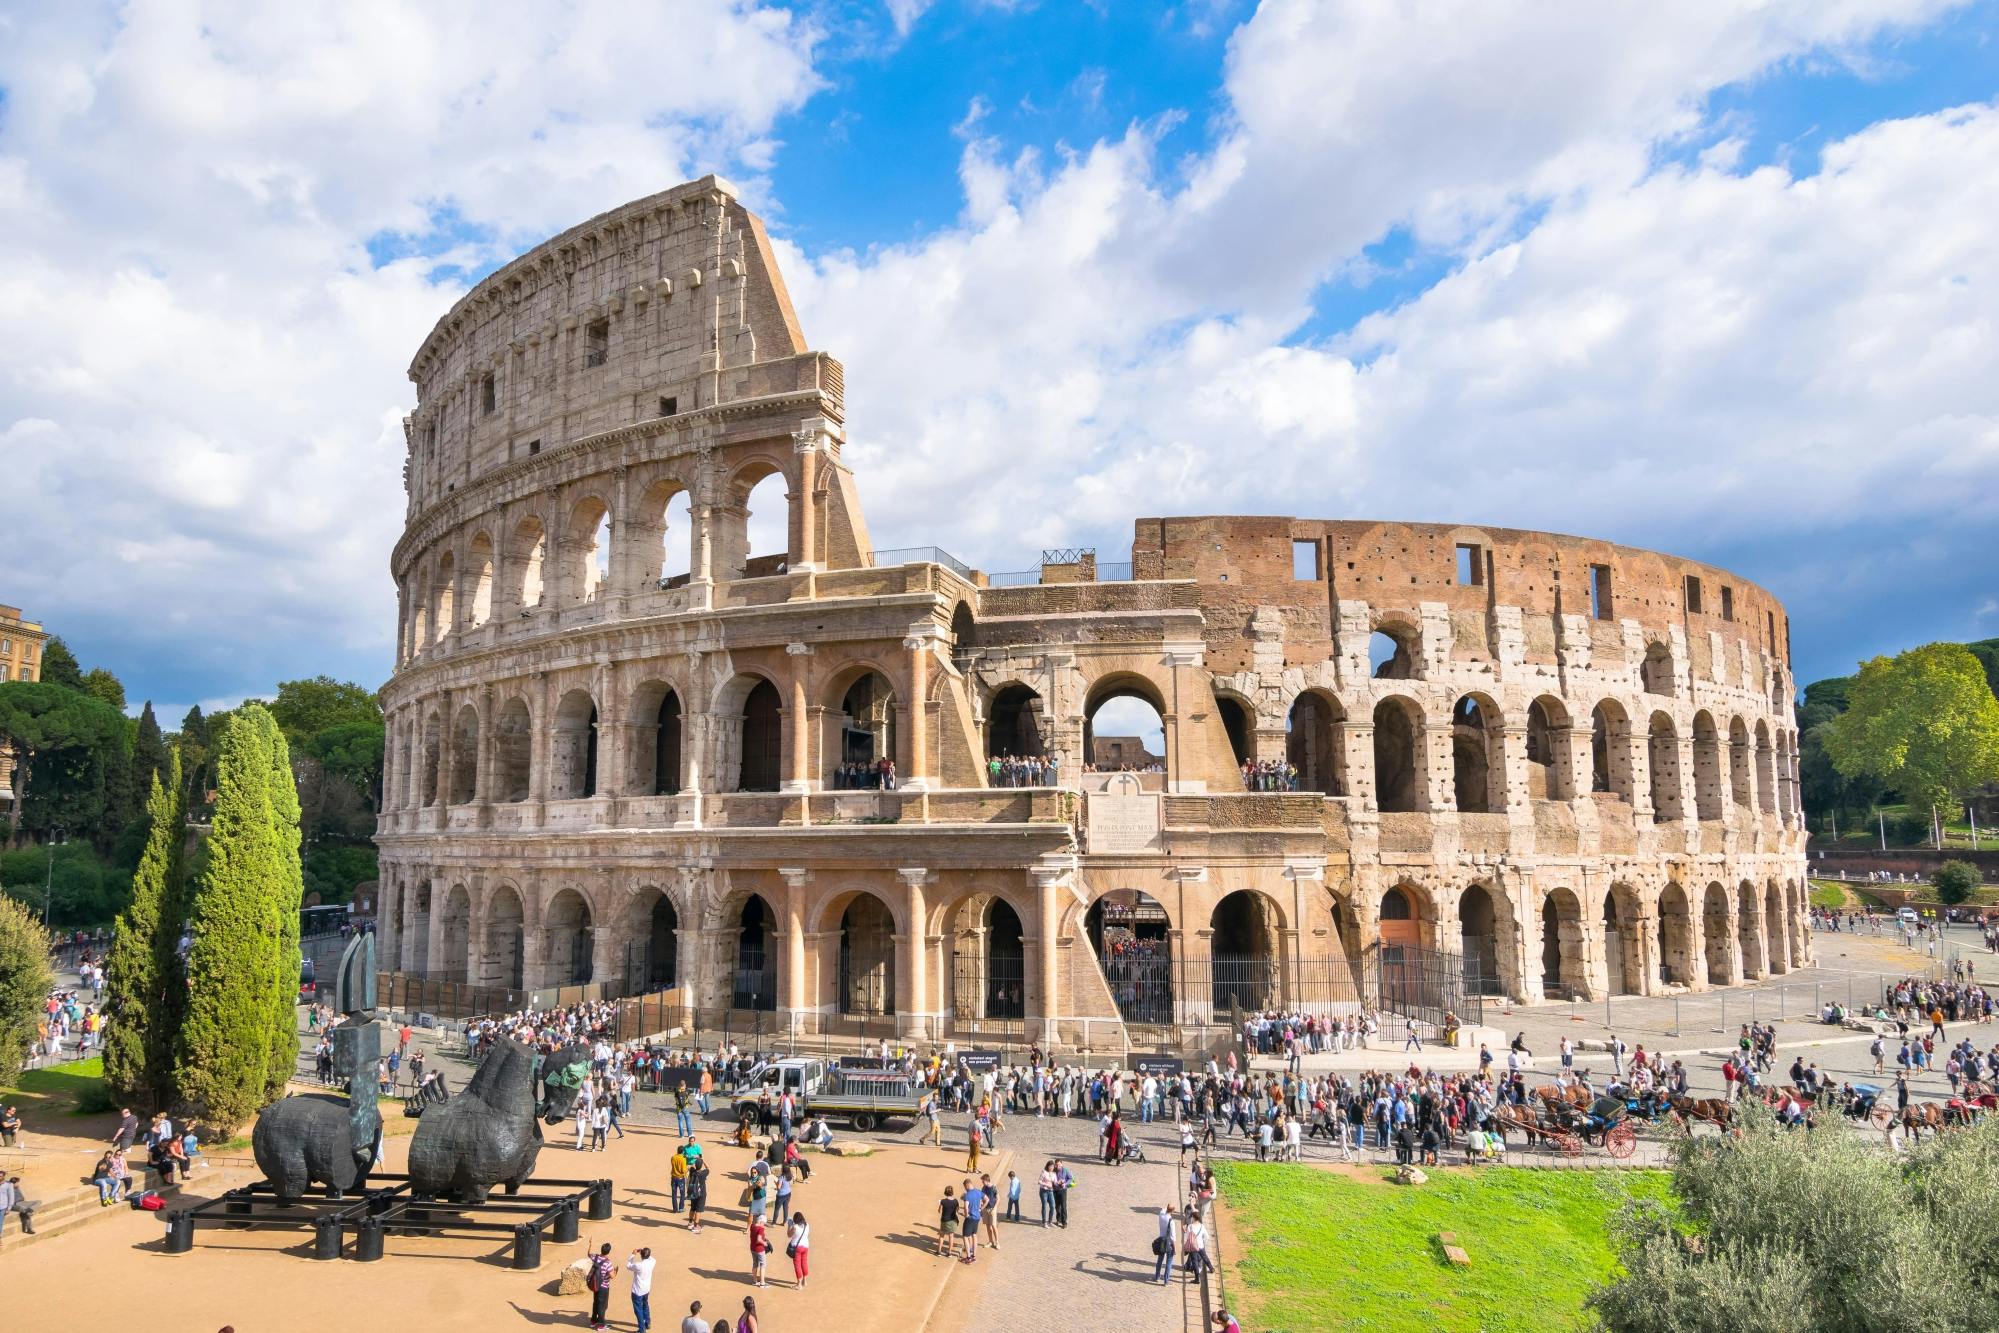 Vaticano, Colosseo, Foro Romano, Basilica di San Pietro con i trasporti pubblici